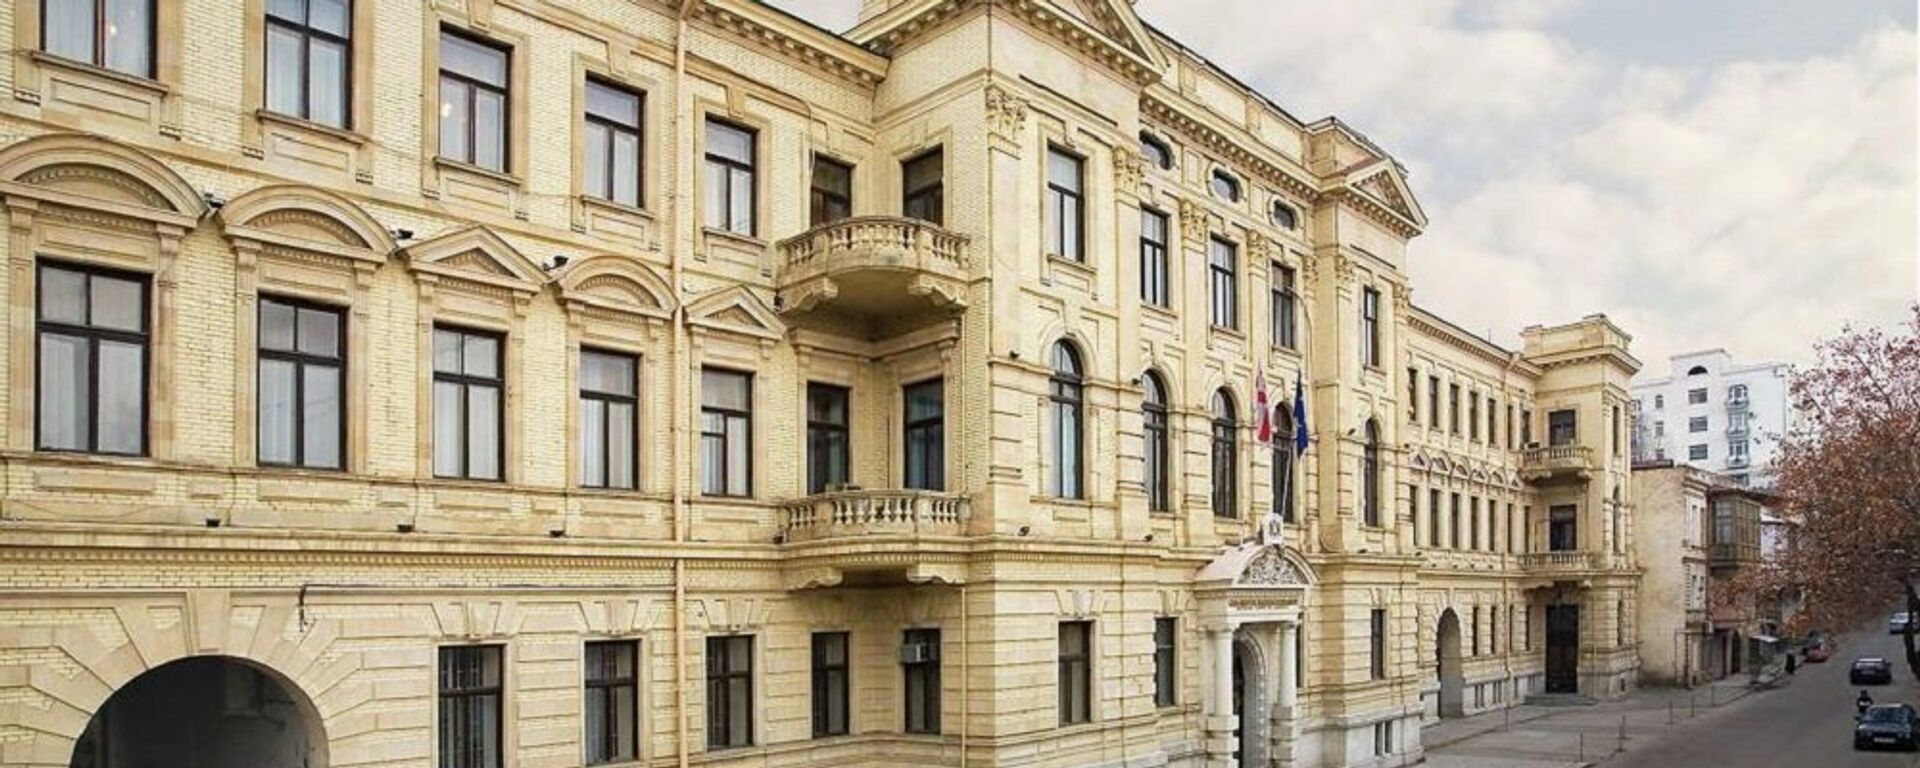 Здание Верховного суда Грузии - Sputnik Грузия, 1920, 16.07.2021